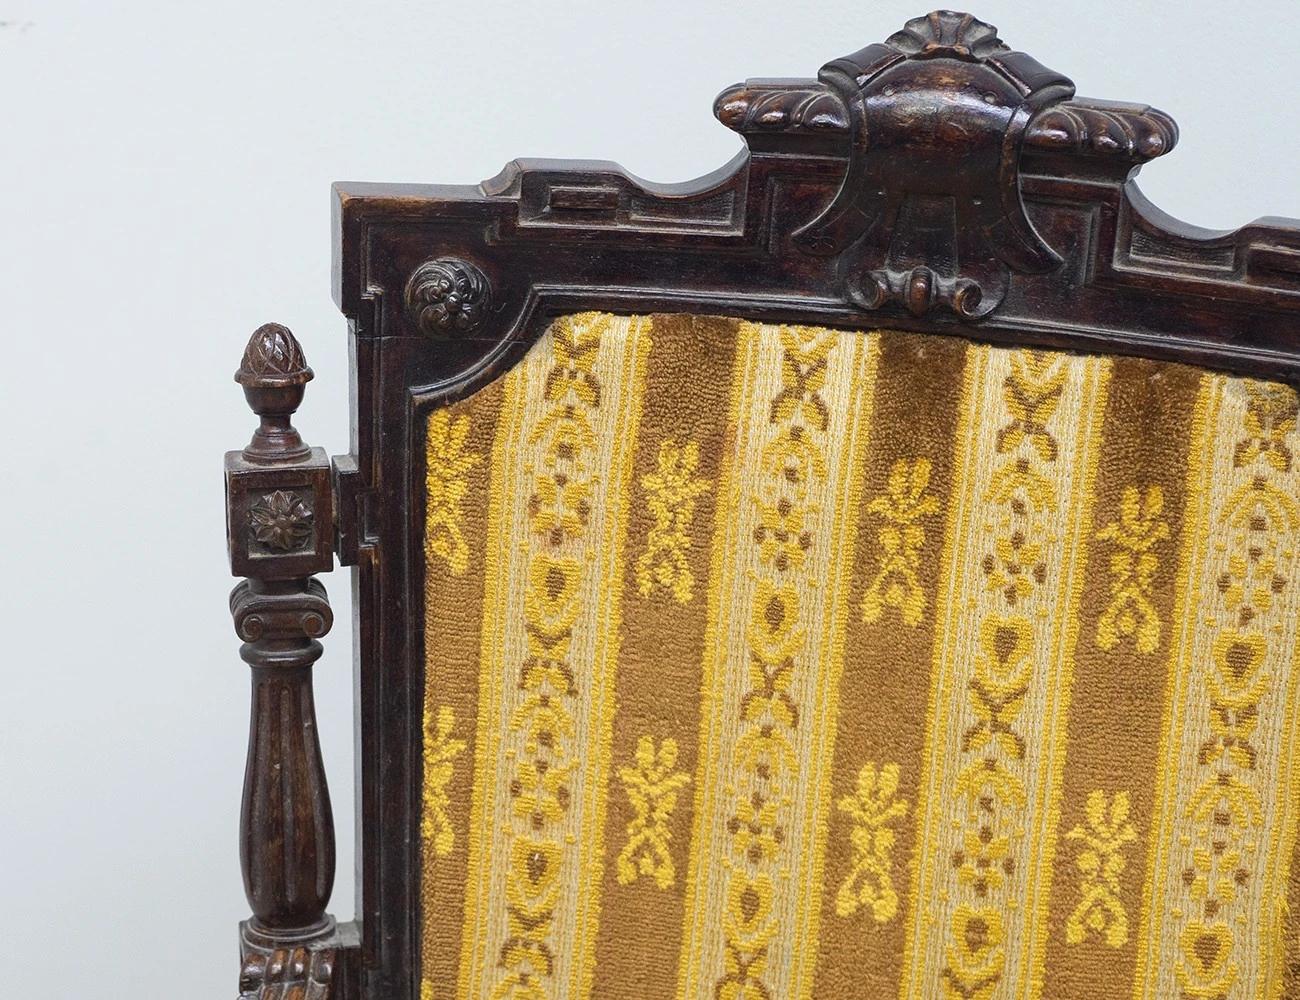 Реставрация антикварного кресла с резьбой, 19 век